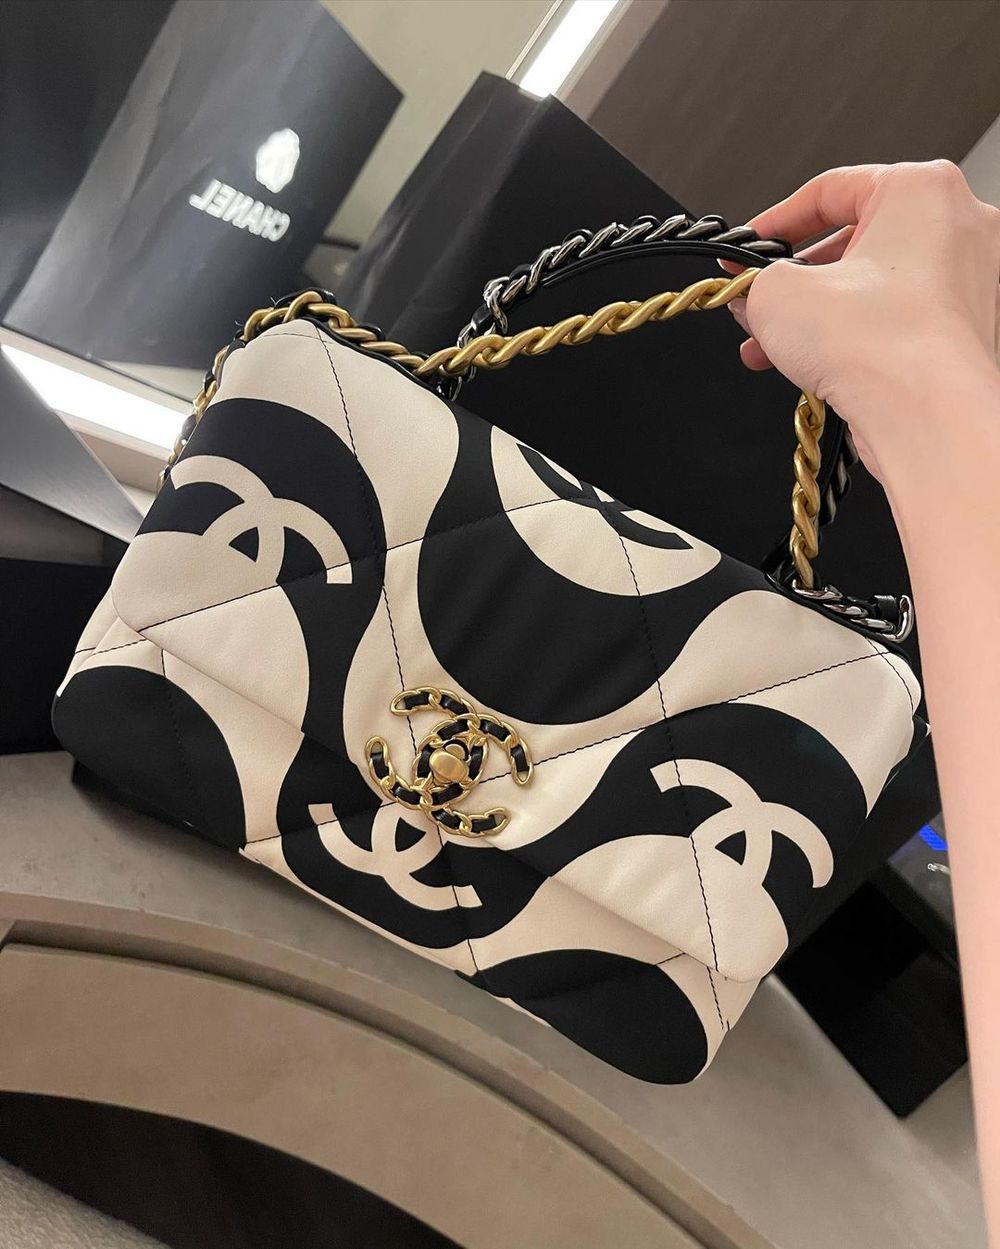  
Một chiếc túi Chanel vừa được cô nàng khoe gần đây trên mạng xã hội. (Ảnh: IGNV)